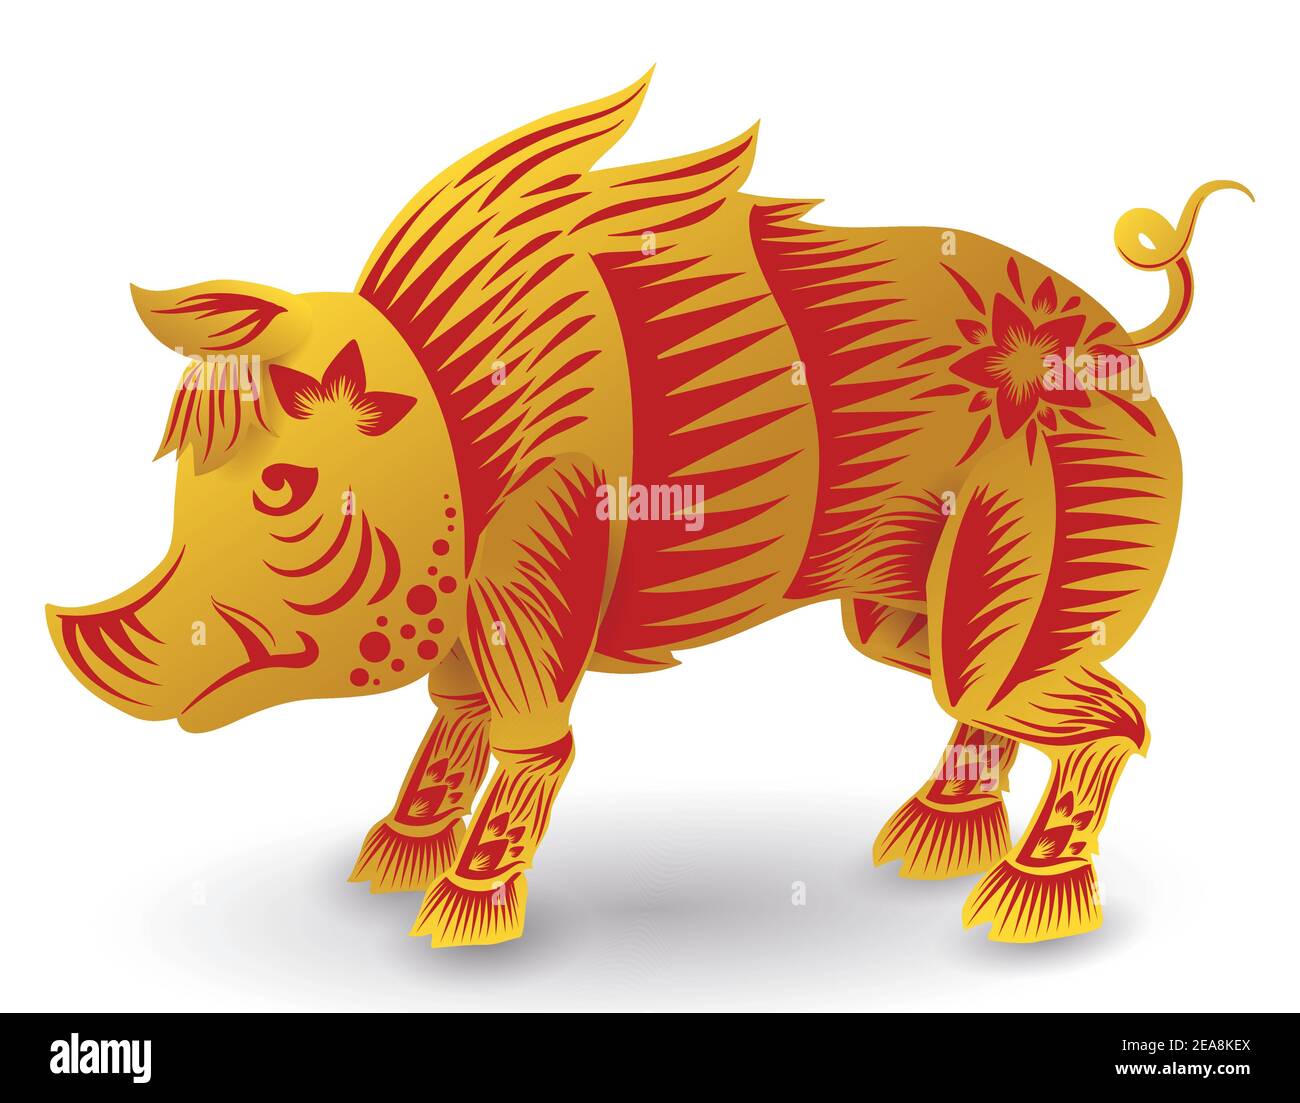 Coraggioso maiale o cinghiale di zodiaco cinese con feroci zuschi in colori dorati e rossi, isolato su sfondo bianco. Illustrazione Vettoriale